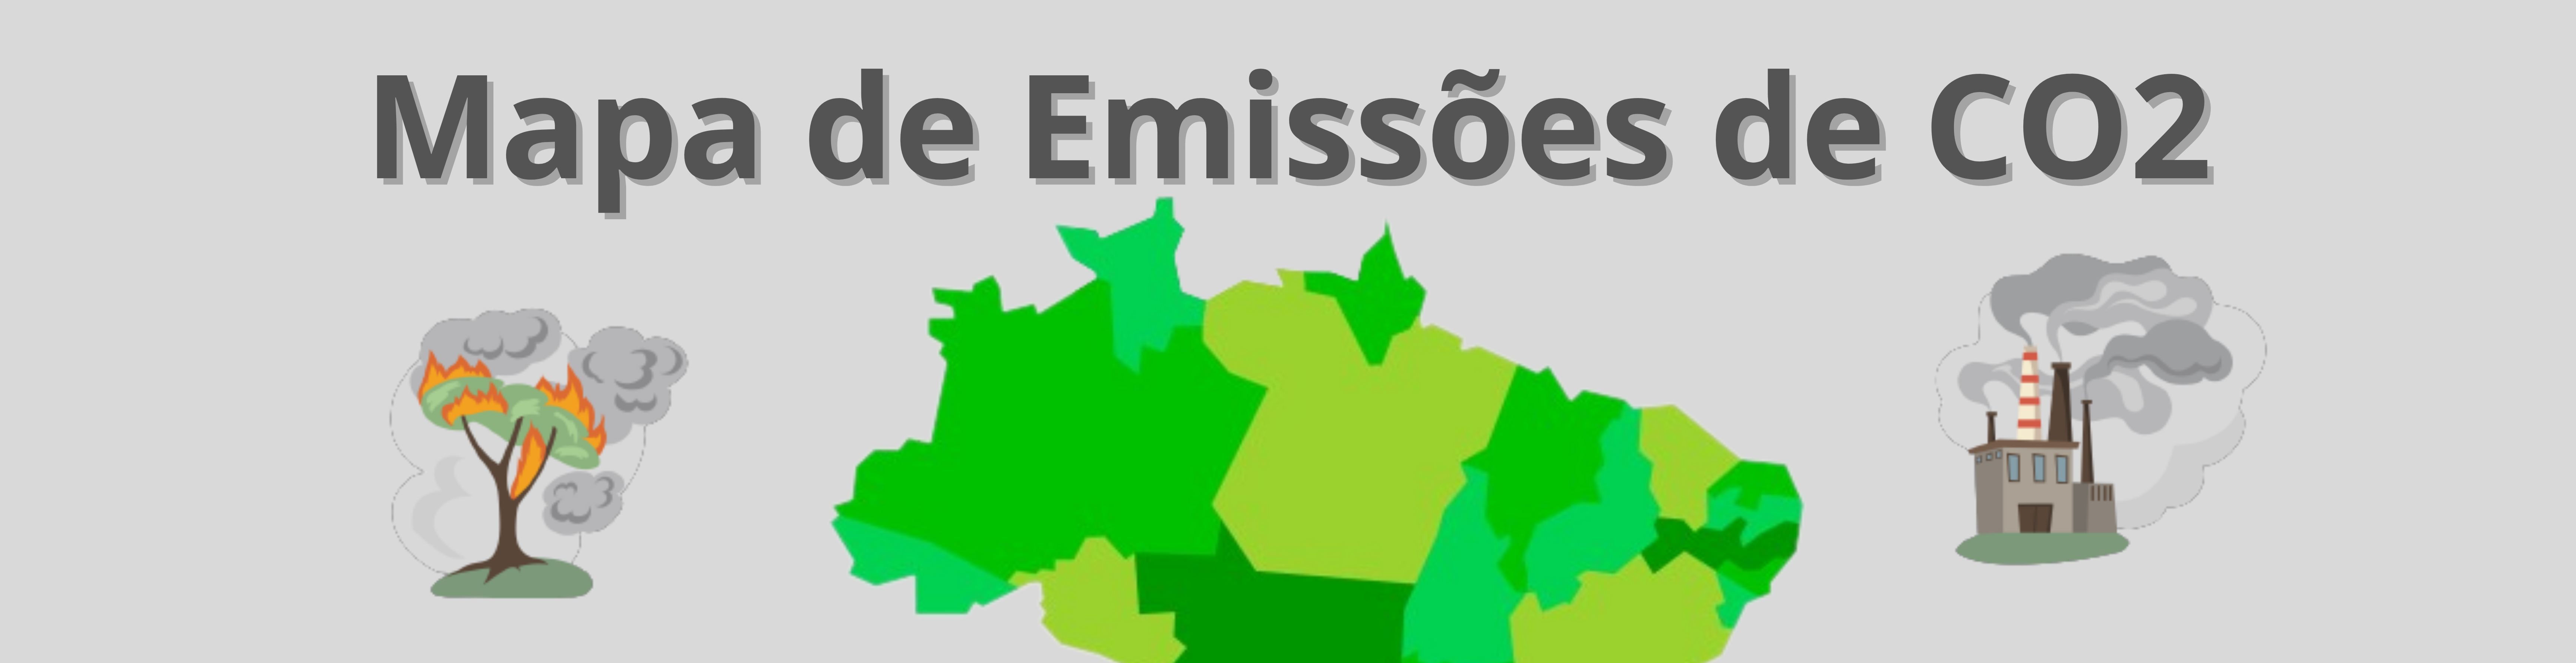 Mapa do brasil com figuras mostrando poluição